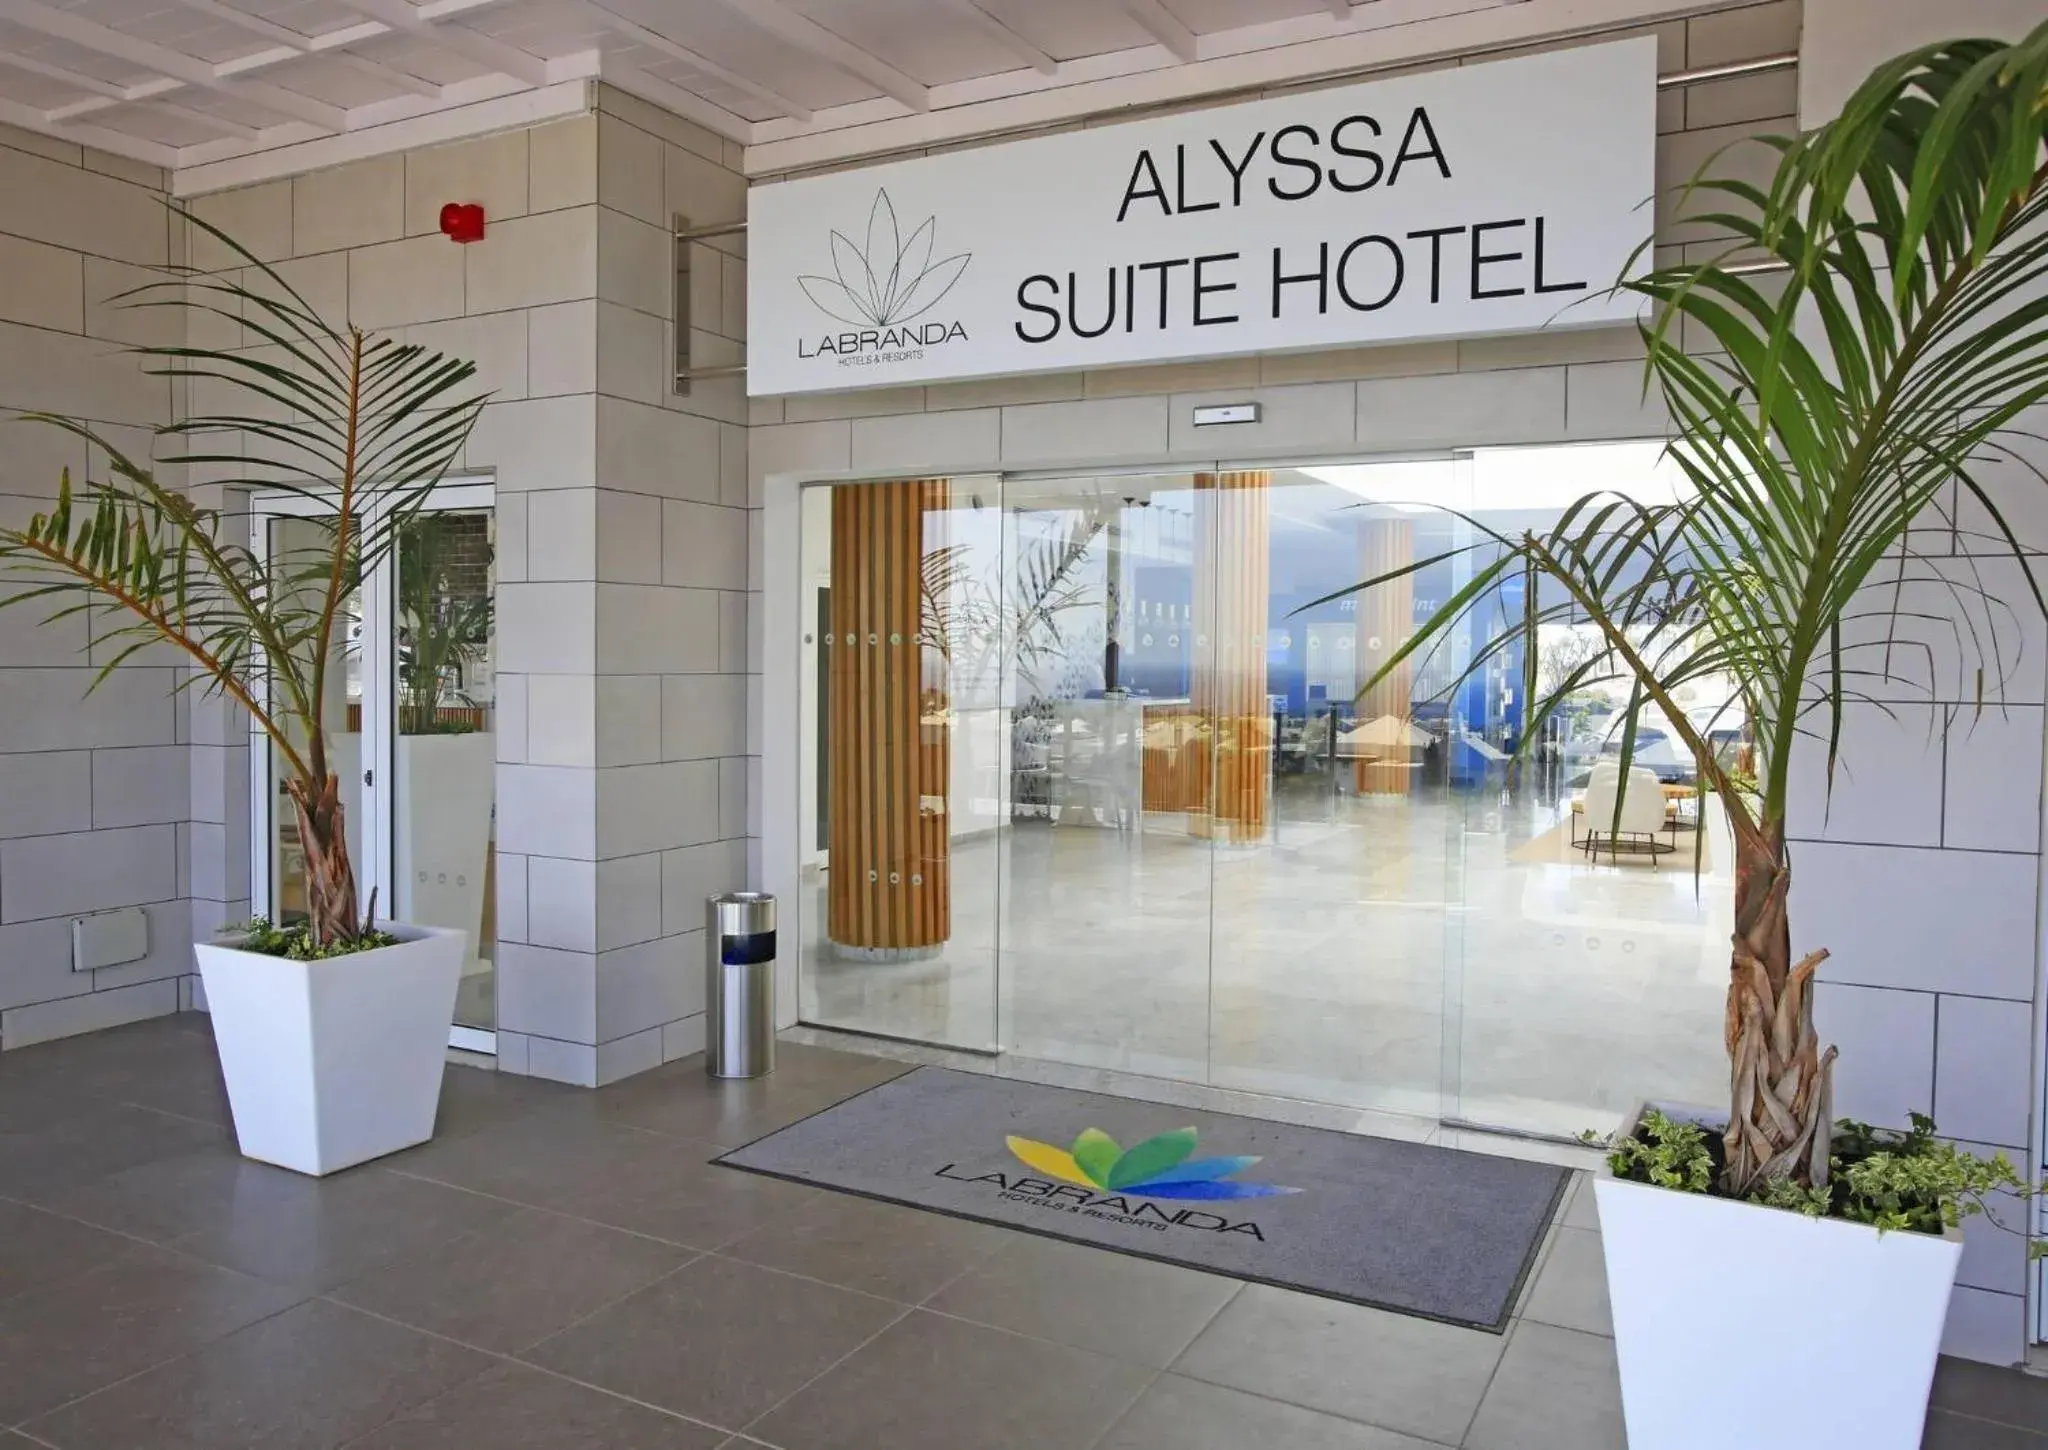 Property building in Labranda Alyssa Suite Hotel